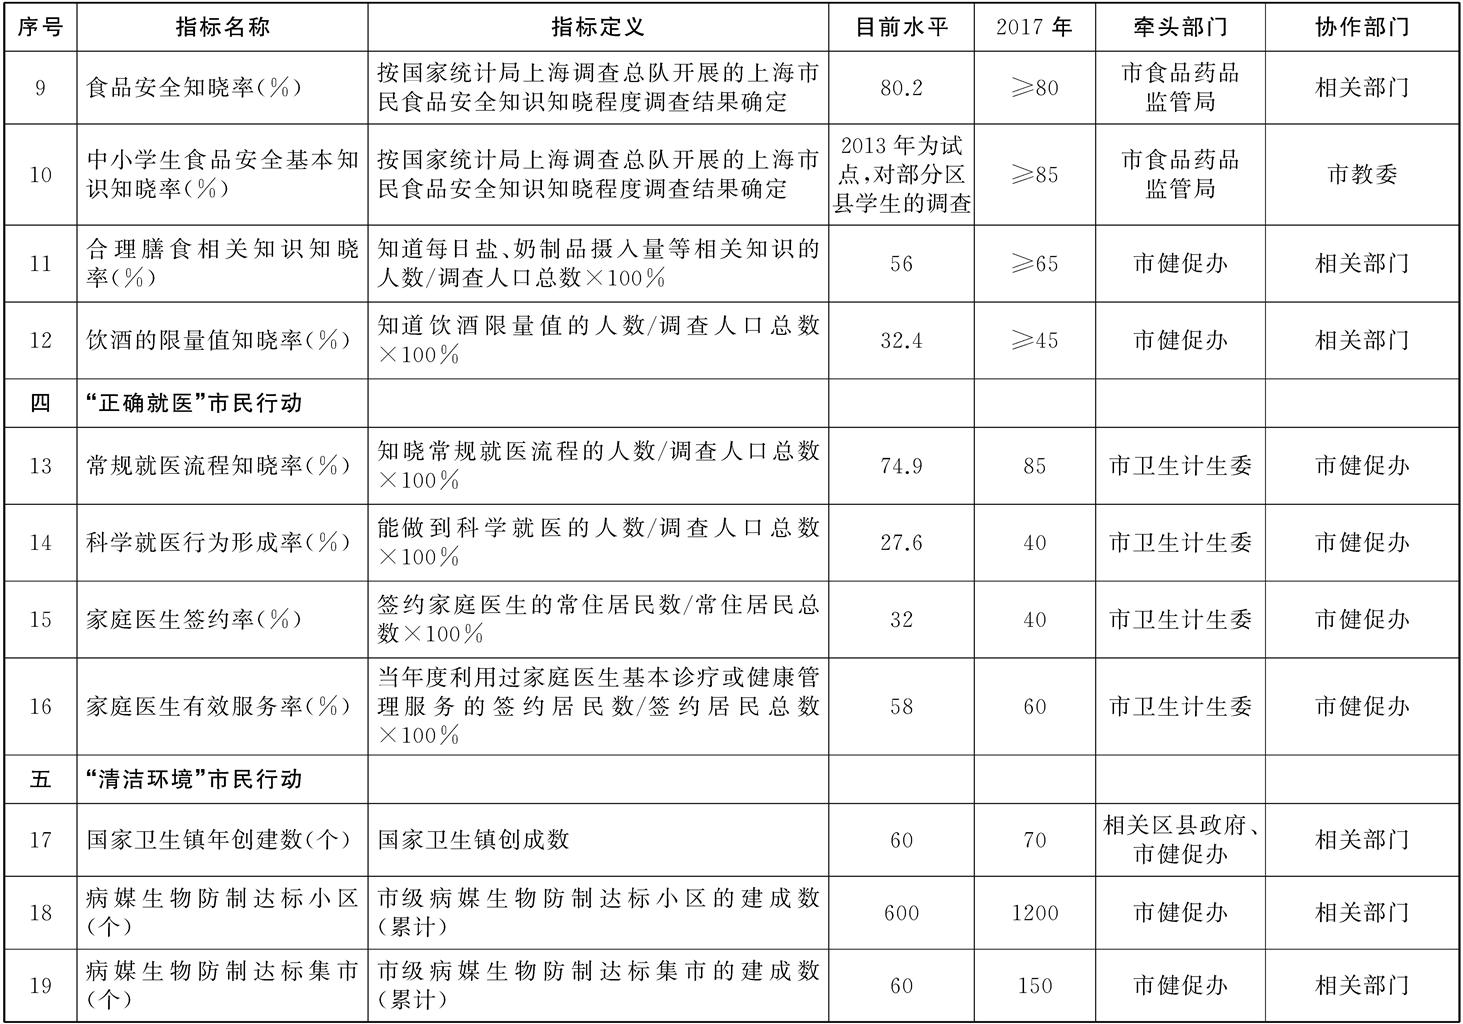 上海市建设健康城市2015——2017年行动计划工作指标